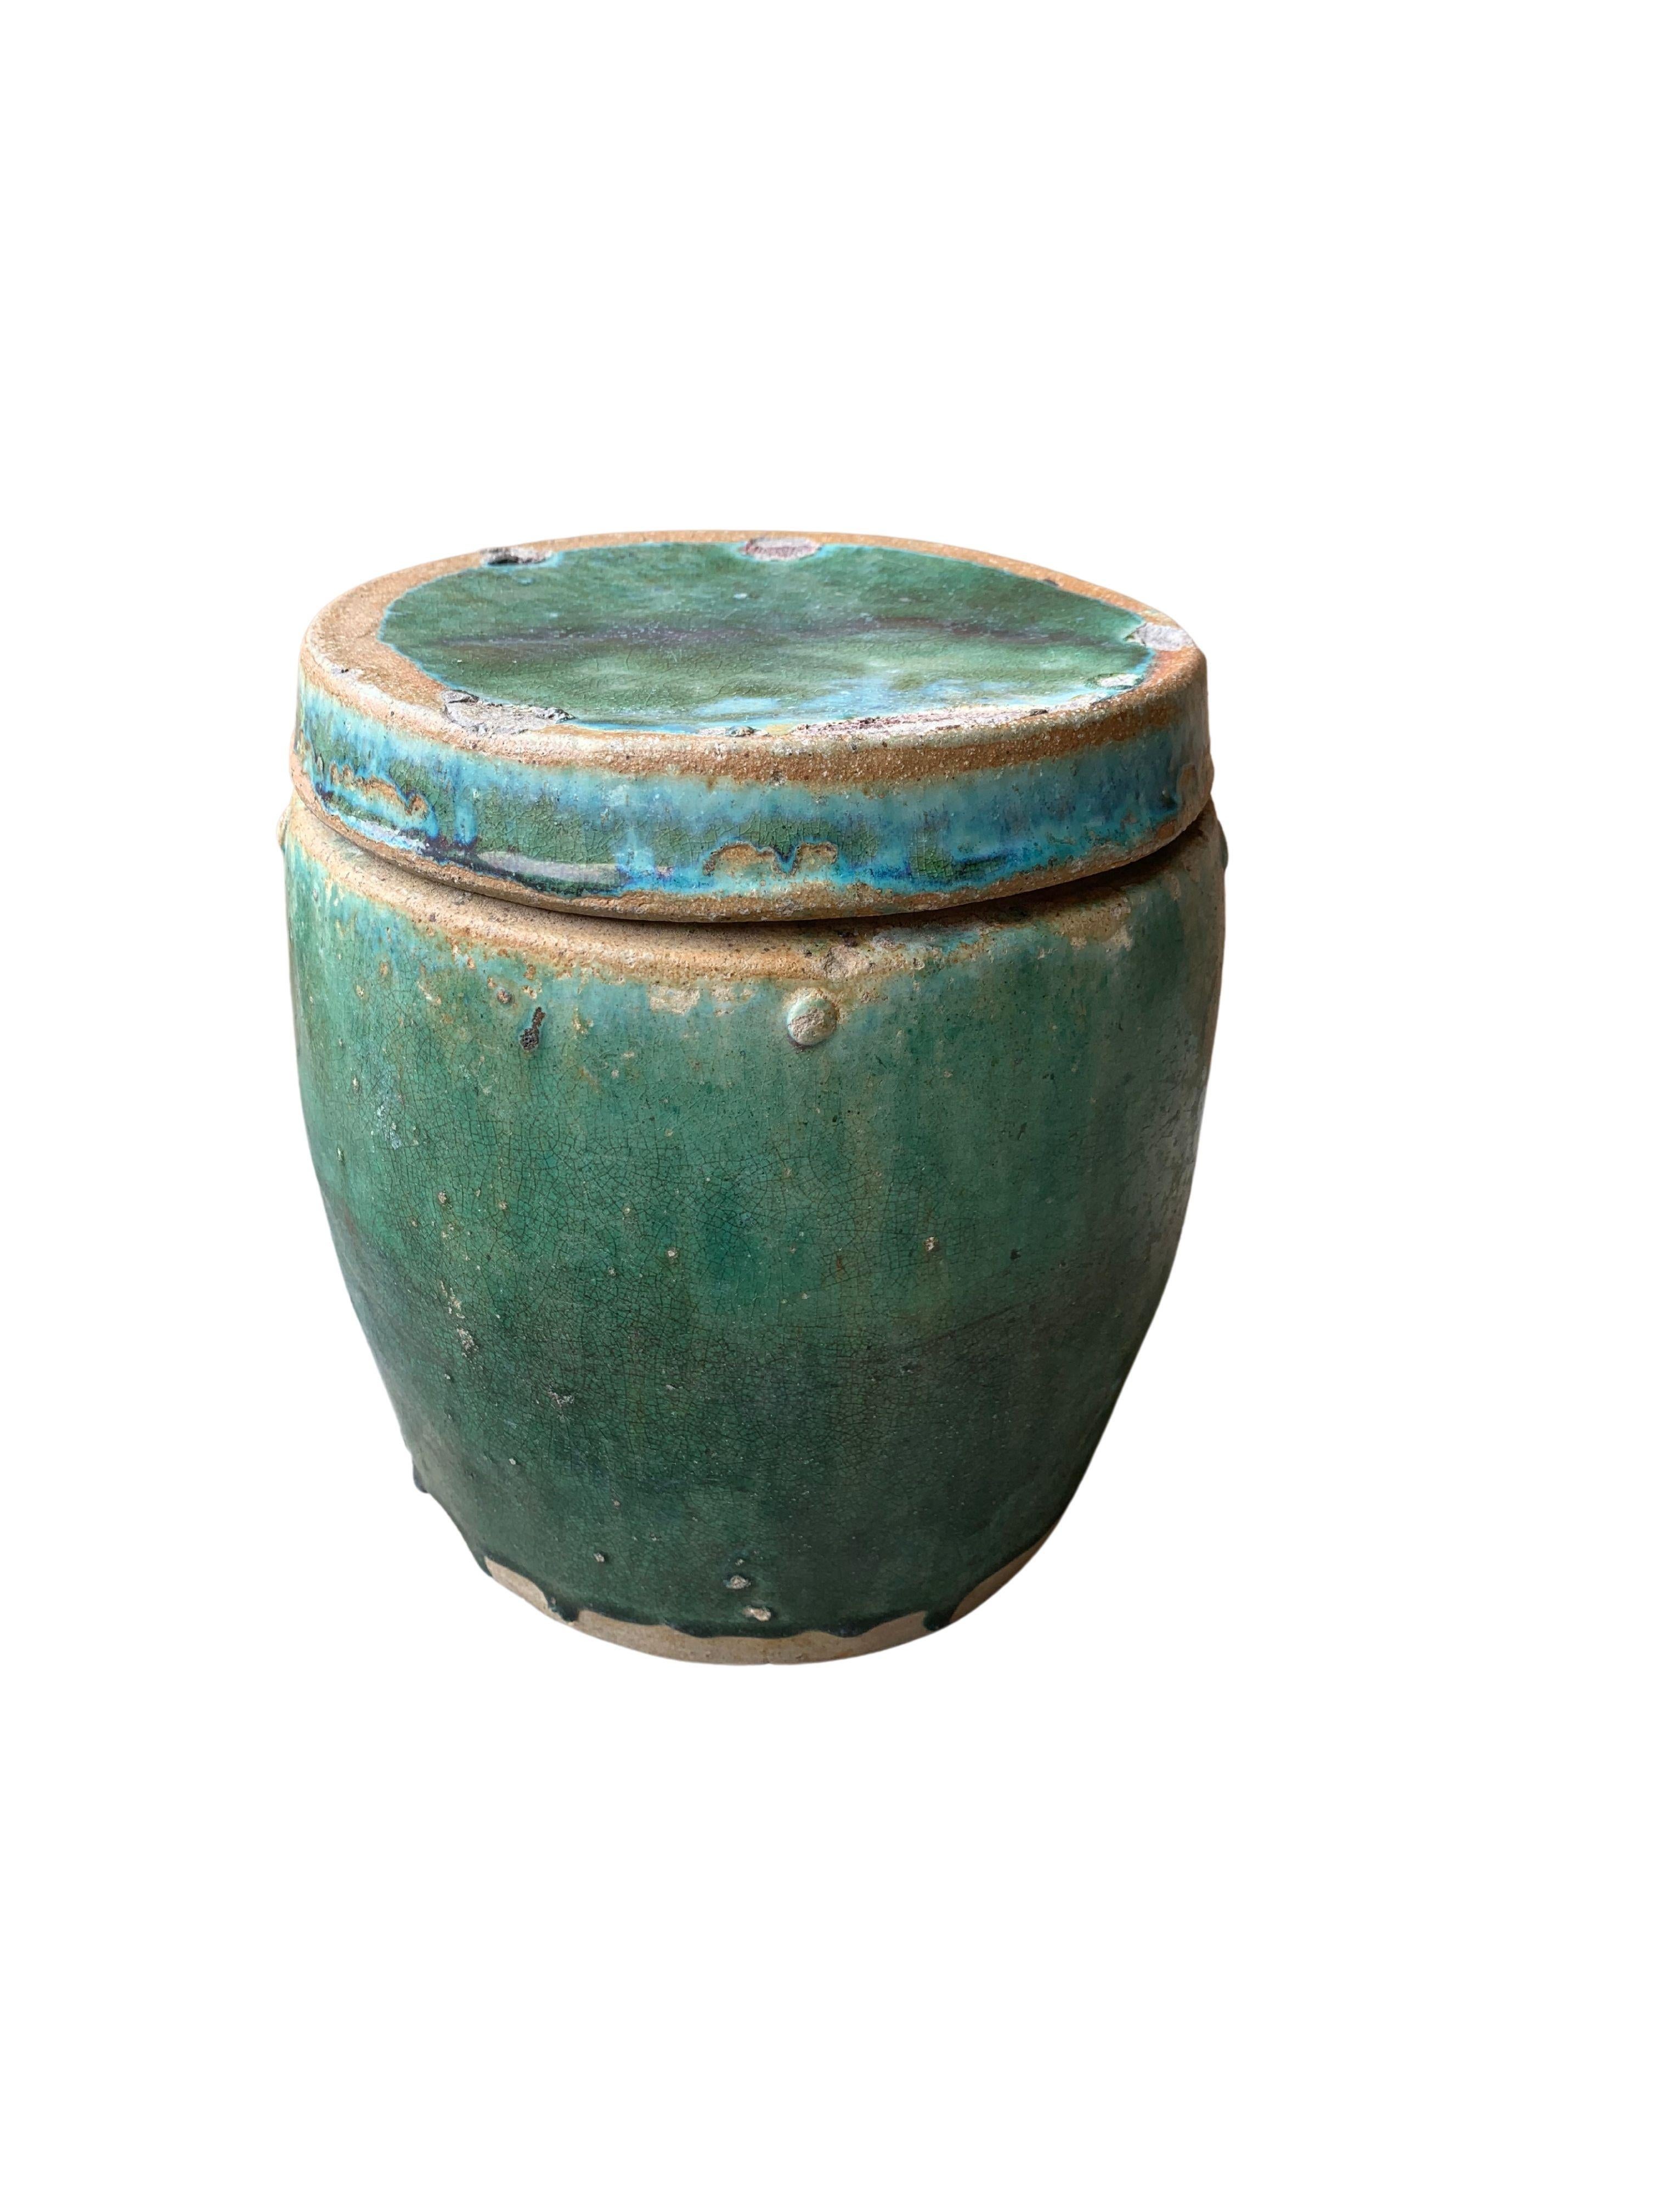 Qing Pot / jardinière en céramique émaillée verte de style chinois Shiwan, vers 1900 en vente